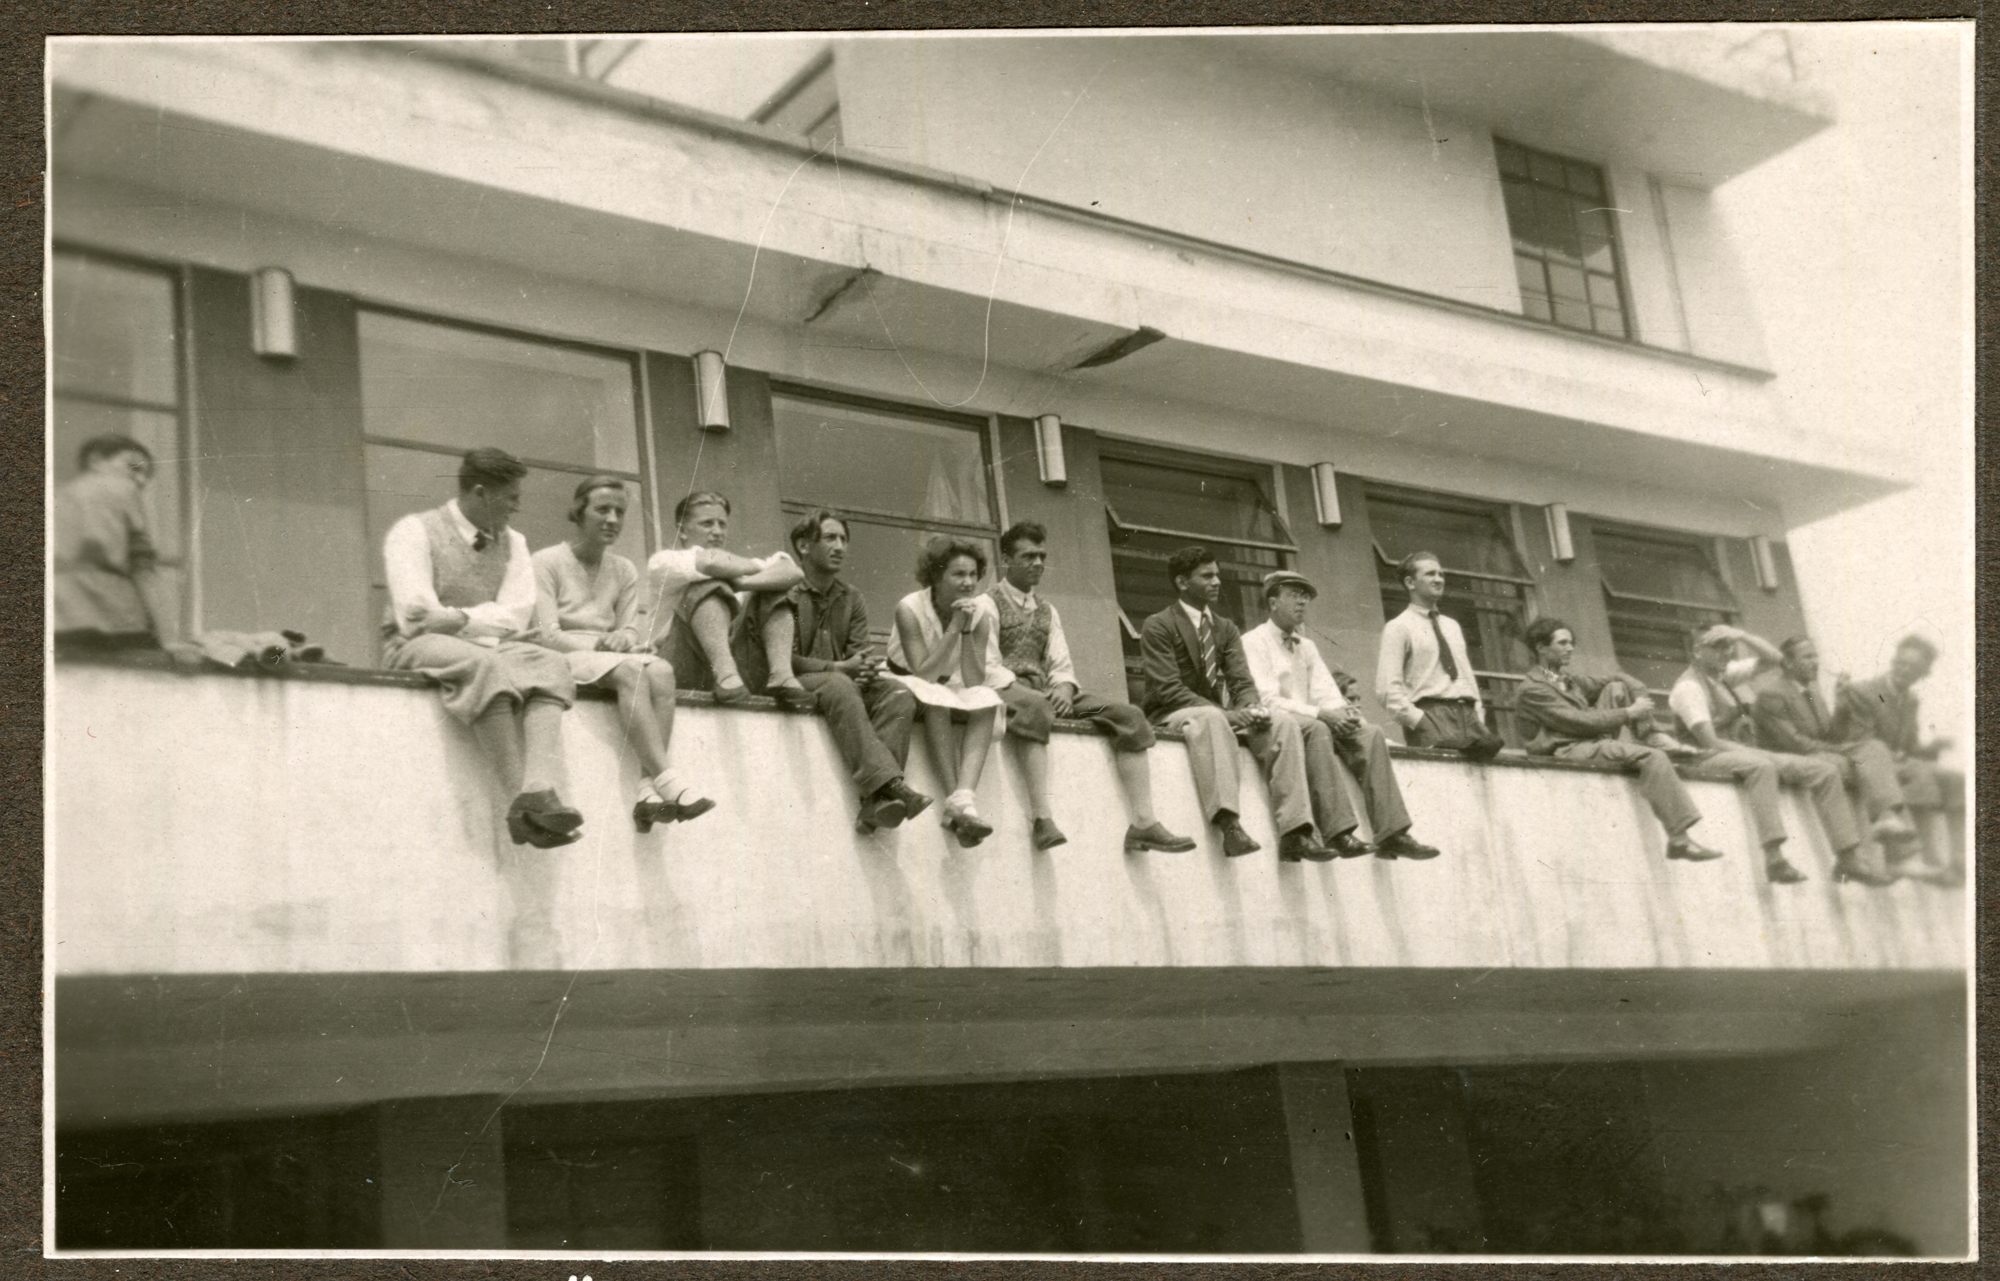 Bauhausgebäude Dessau, Studenten auf der Brüstung der Mensa-Terrasse sitzend, 1931/1932, © Stiftung Bauhaus Dessau 